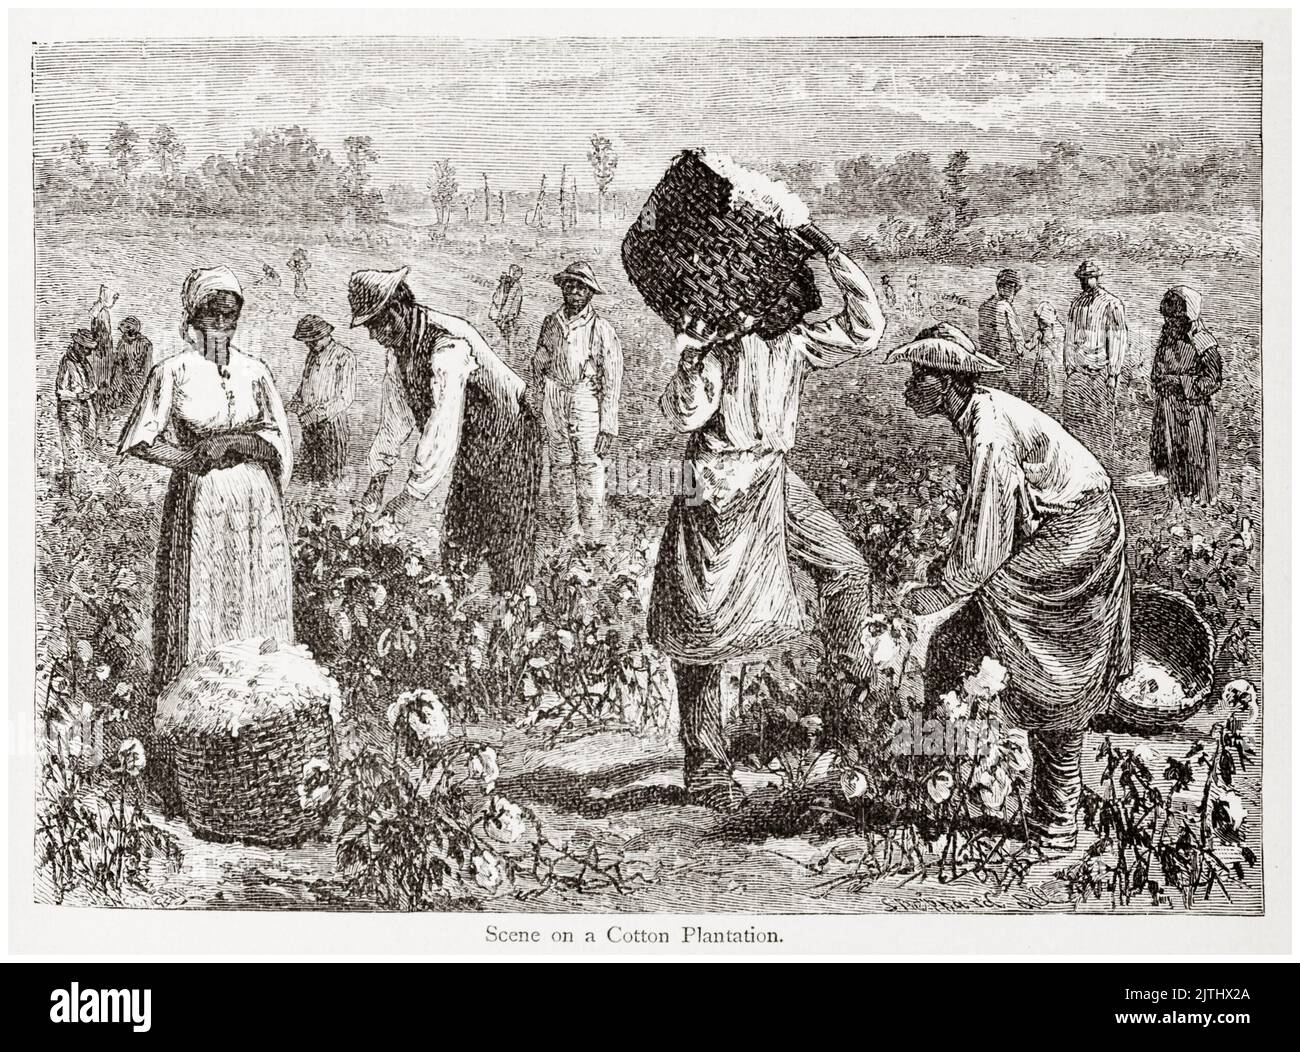 Esclavos en una plantación de algodón en los estados del sur de América, ilustración, 1848 Foto de stock